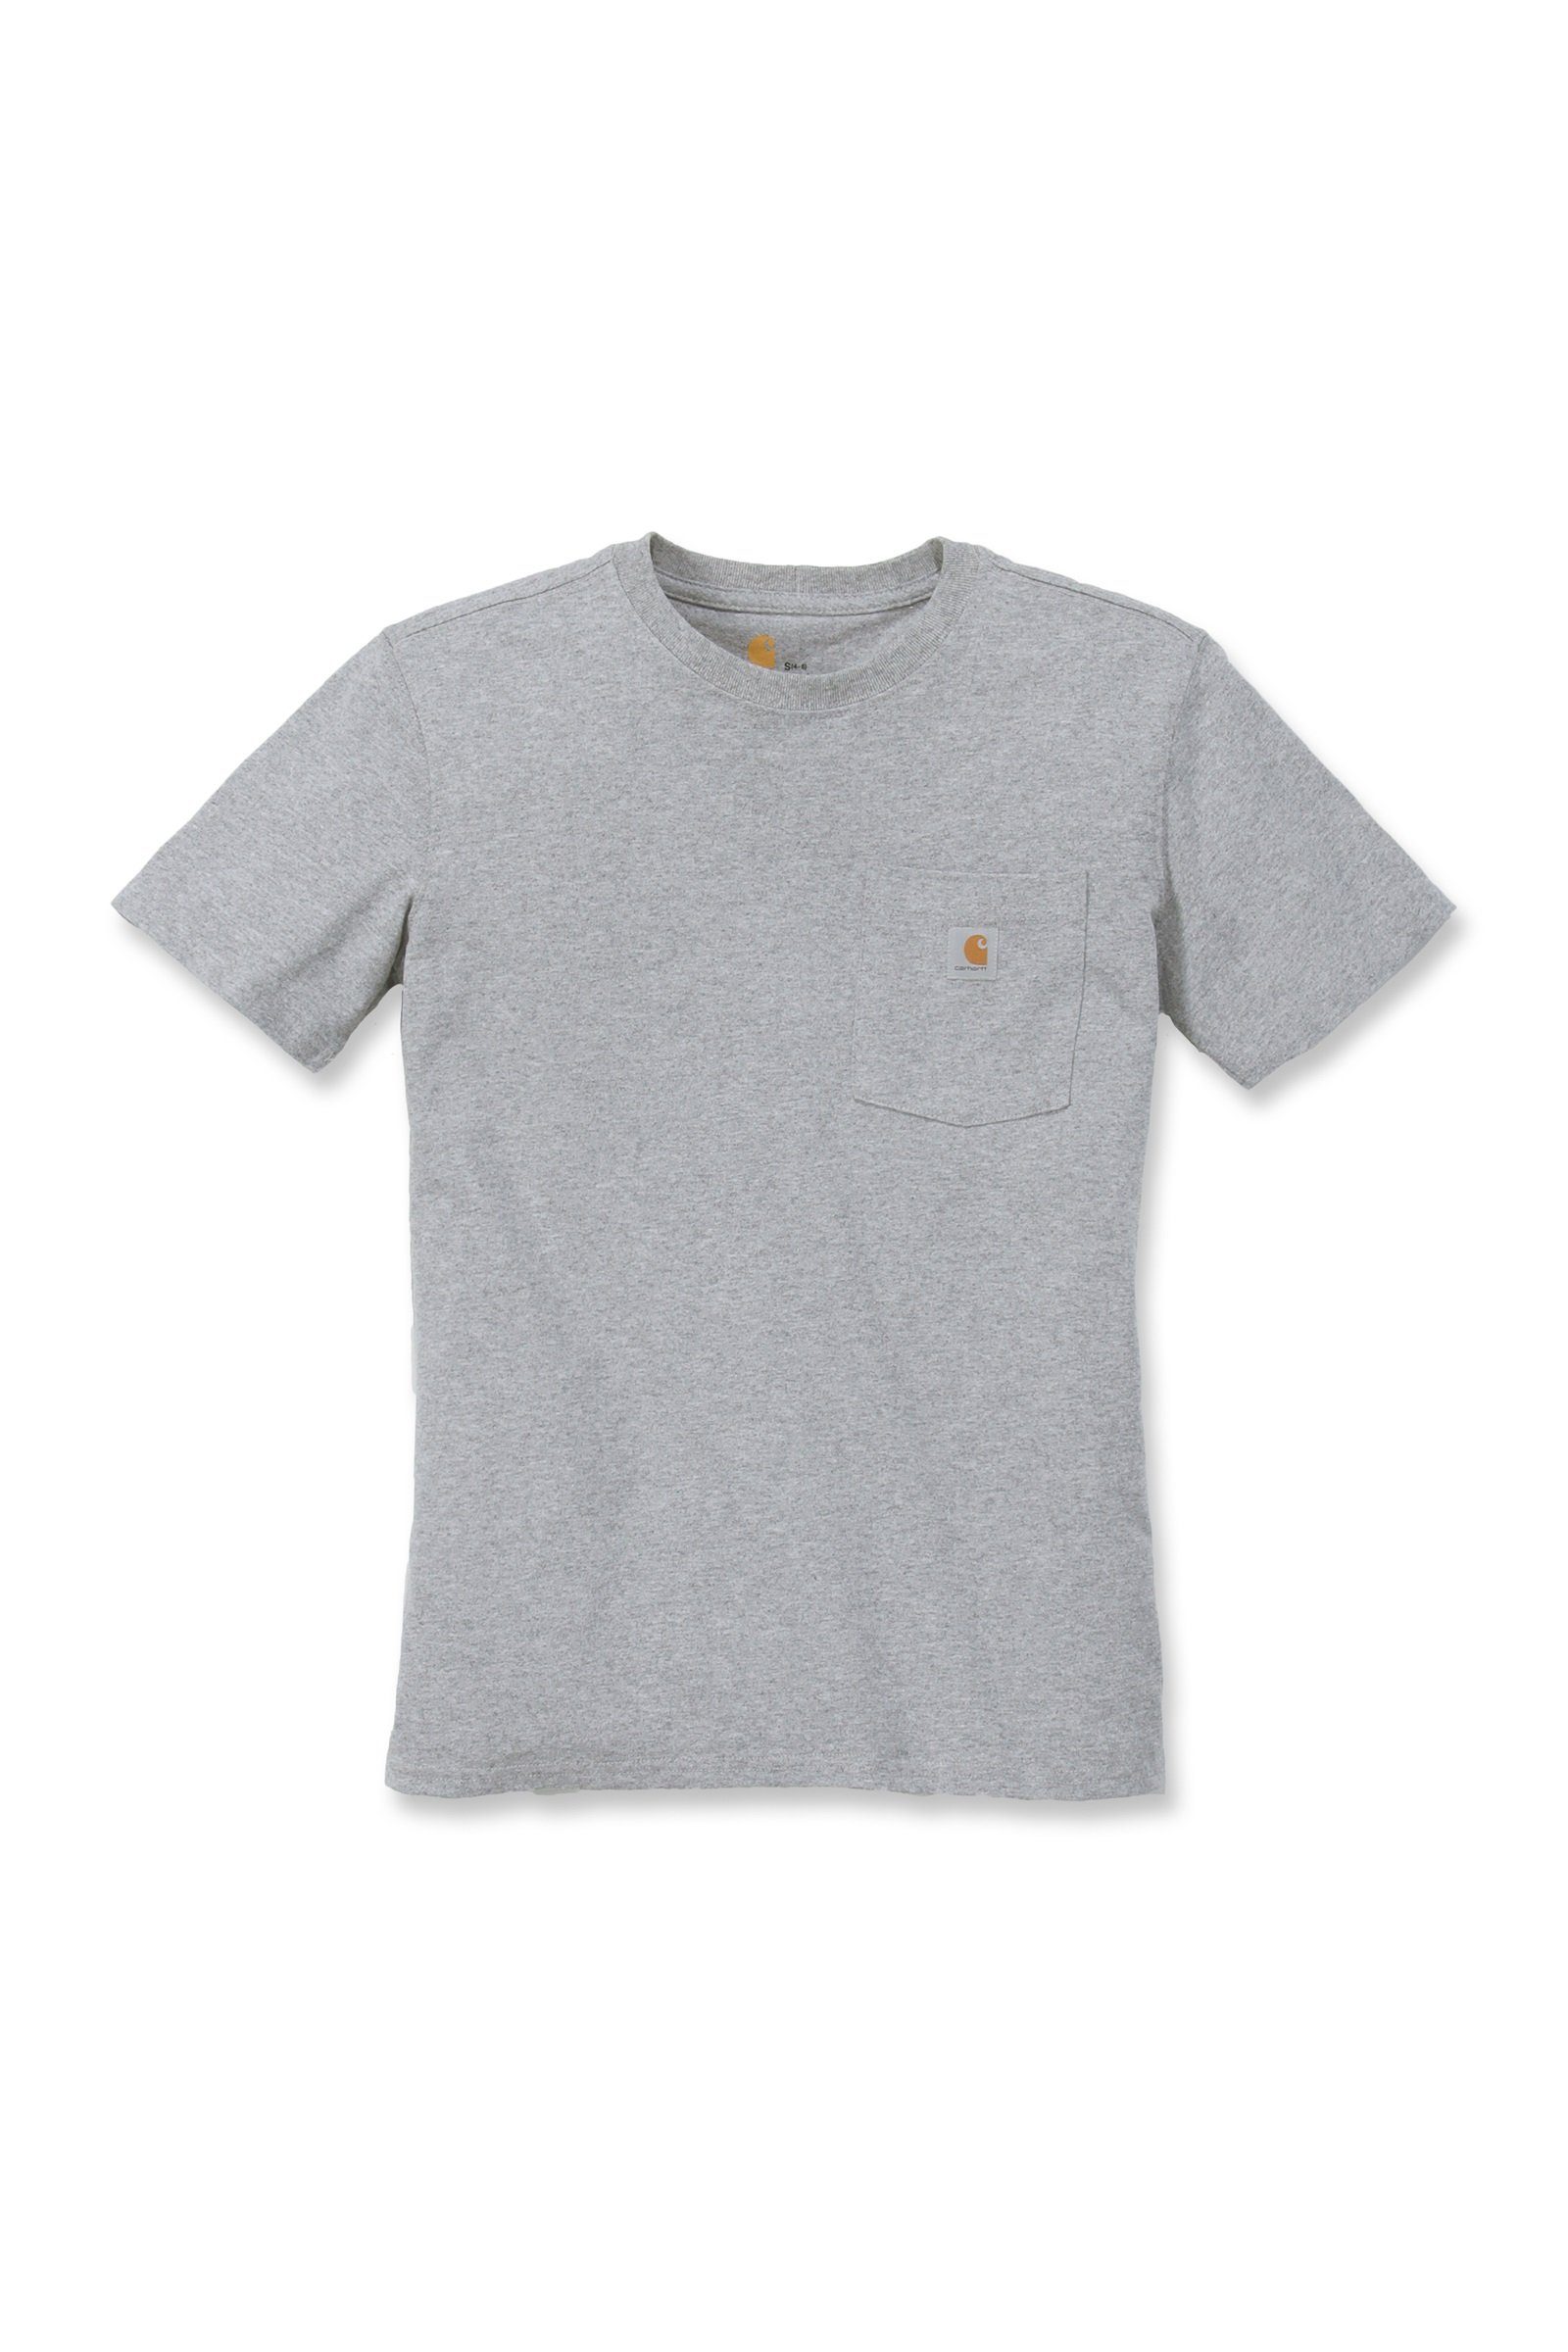 Loose T-Shirt Adult Carhartt T-Shirt heather Carhartt Pocket Fit Damen Heavyweight Short-Sleeve grey